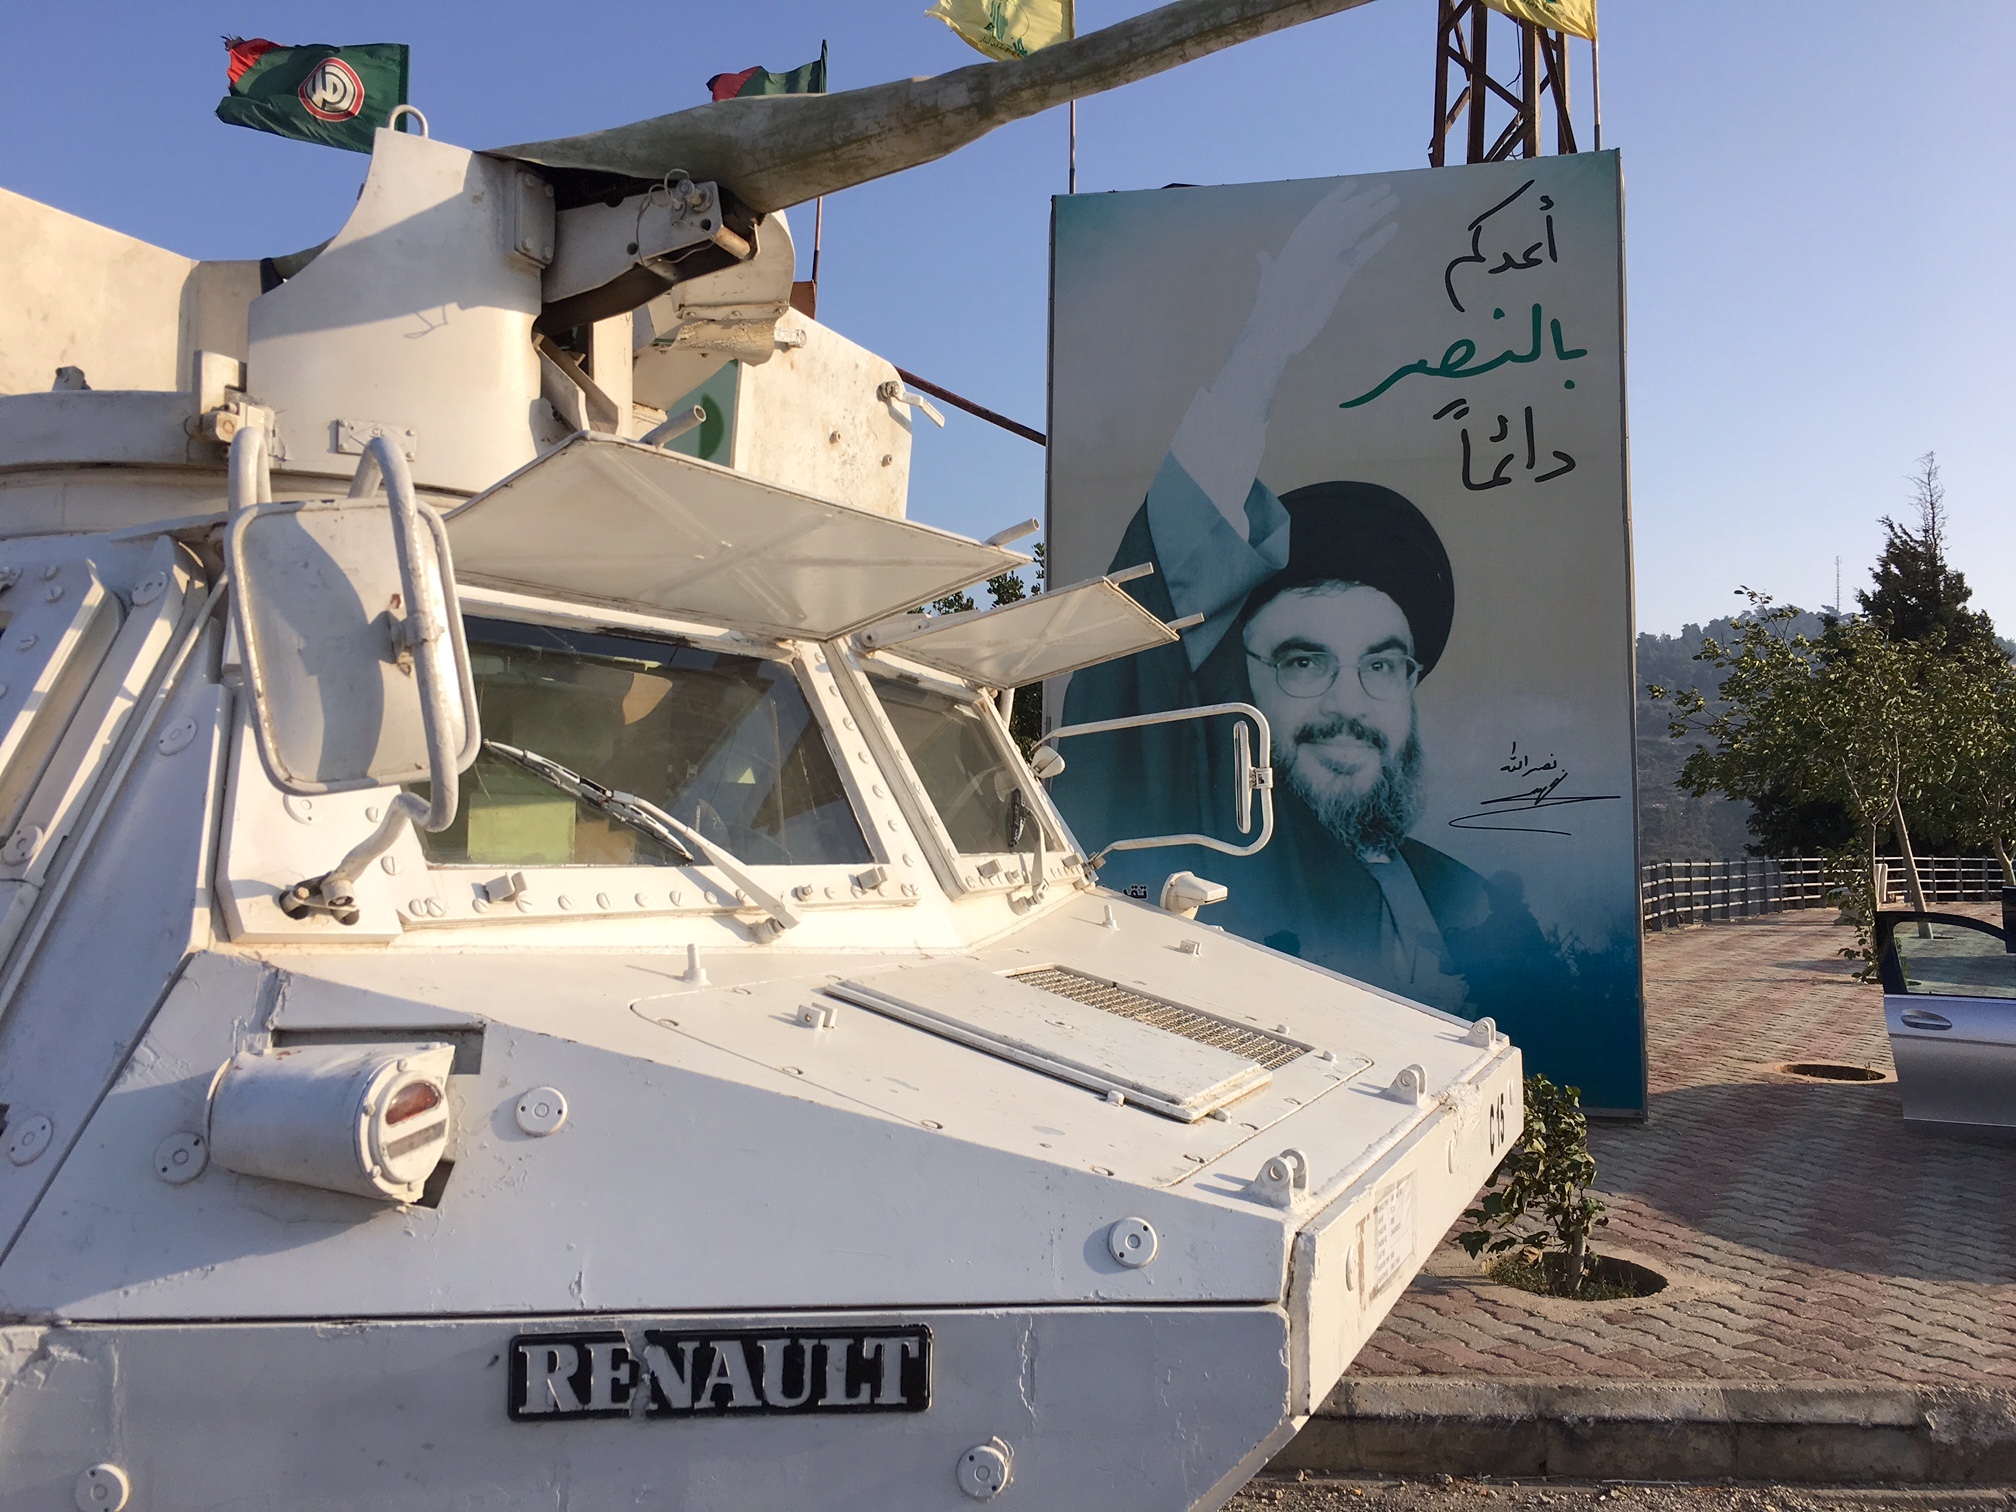 On Lebanon - Israeli border - UN armored vehicle and Nasrallah